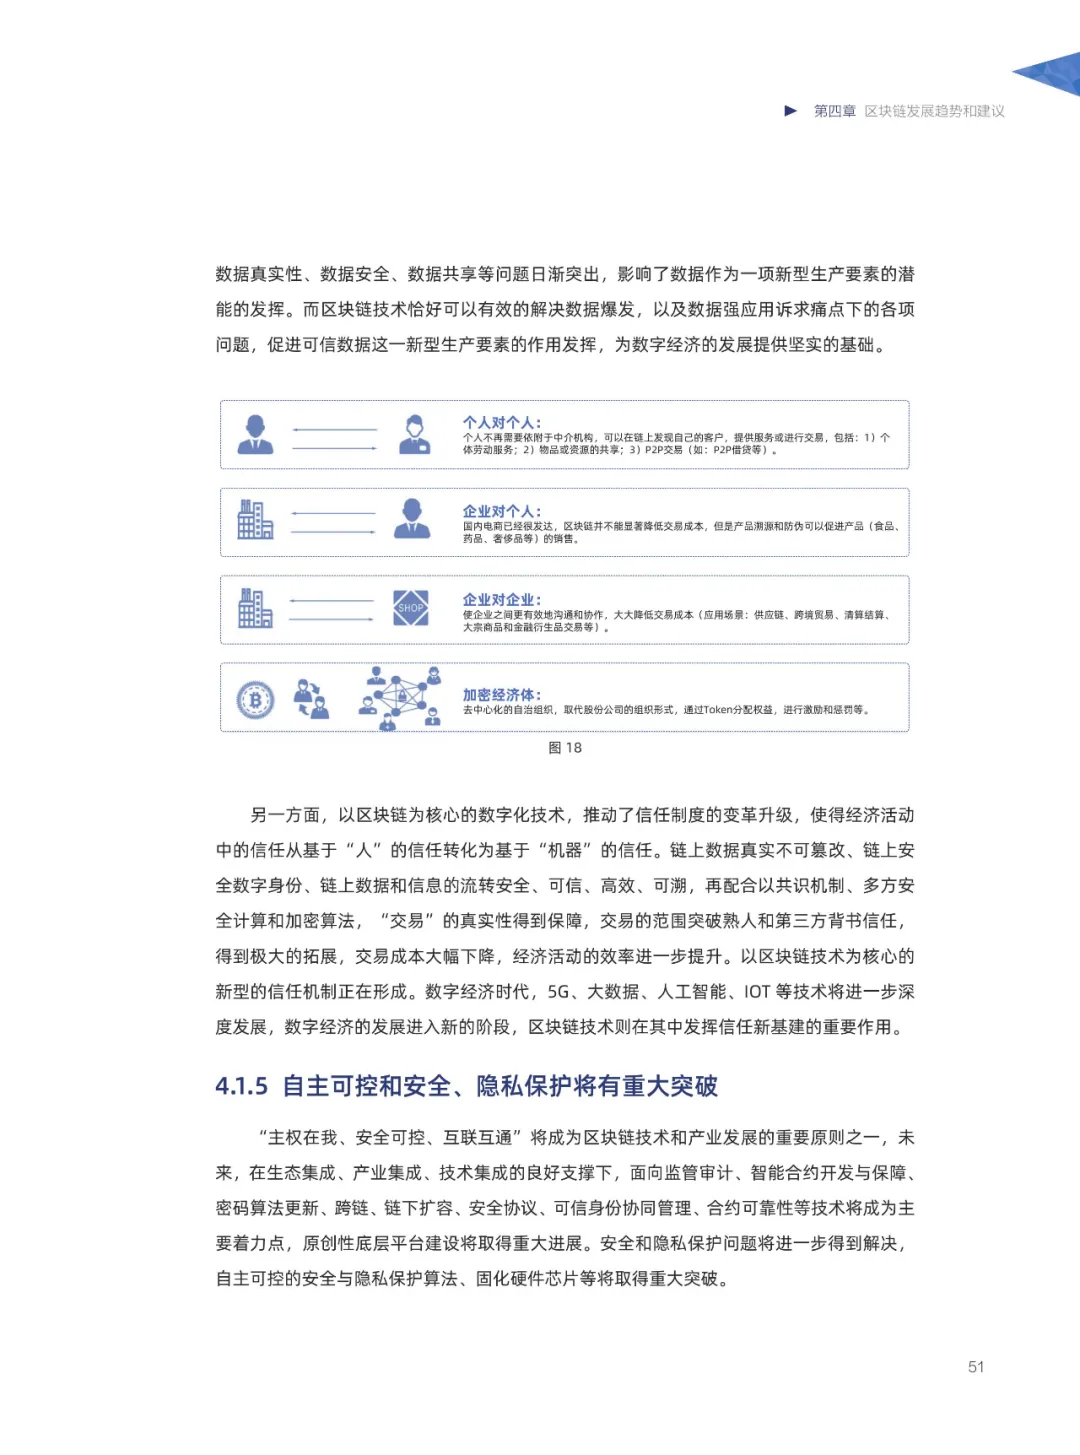 信任经济的崛起——2020中国区块链发展报告_加密算法_52